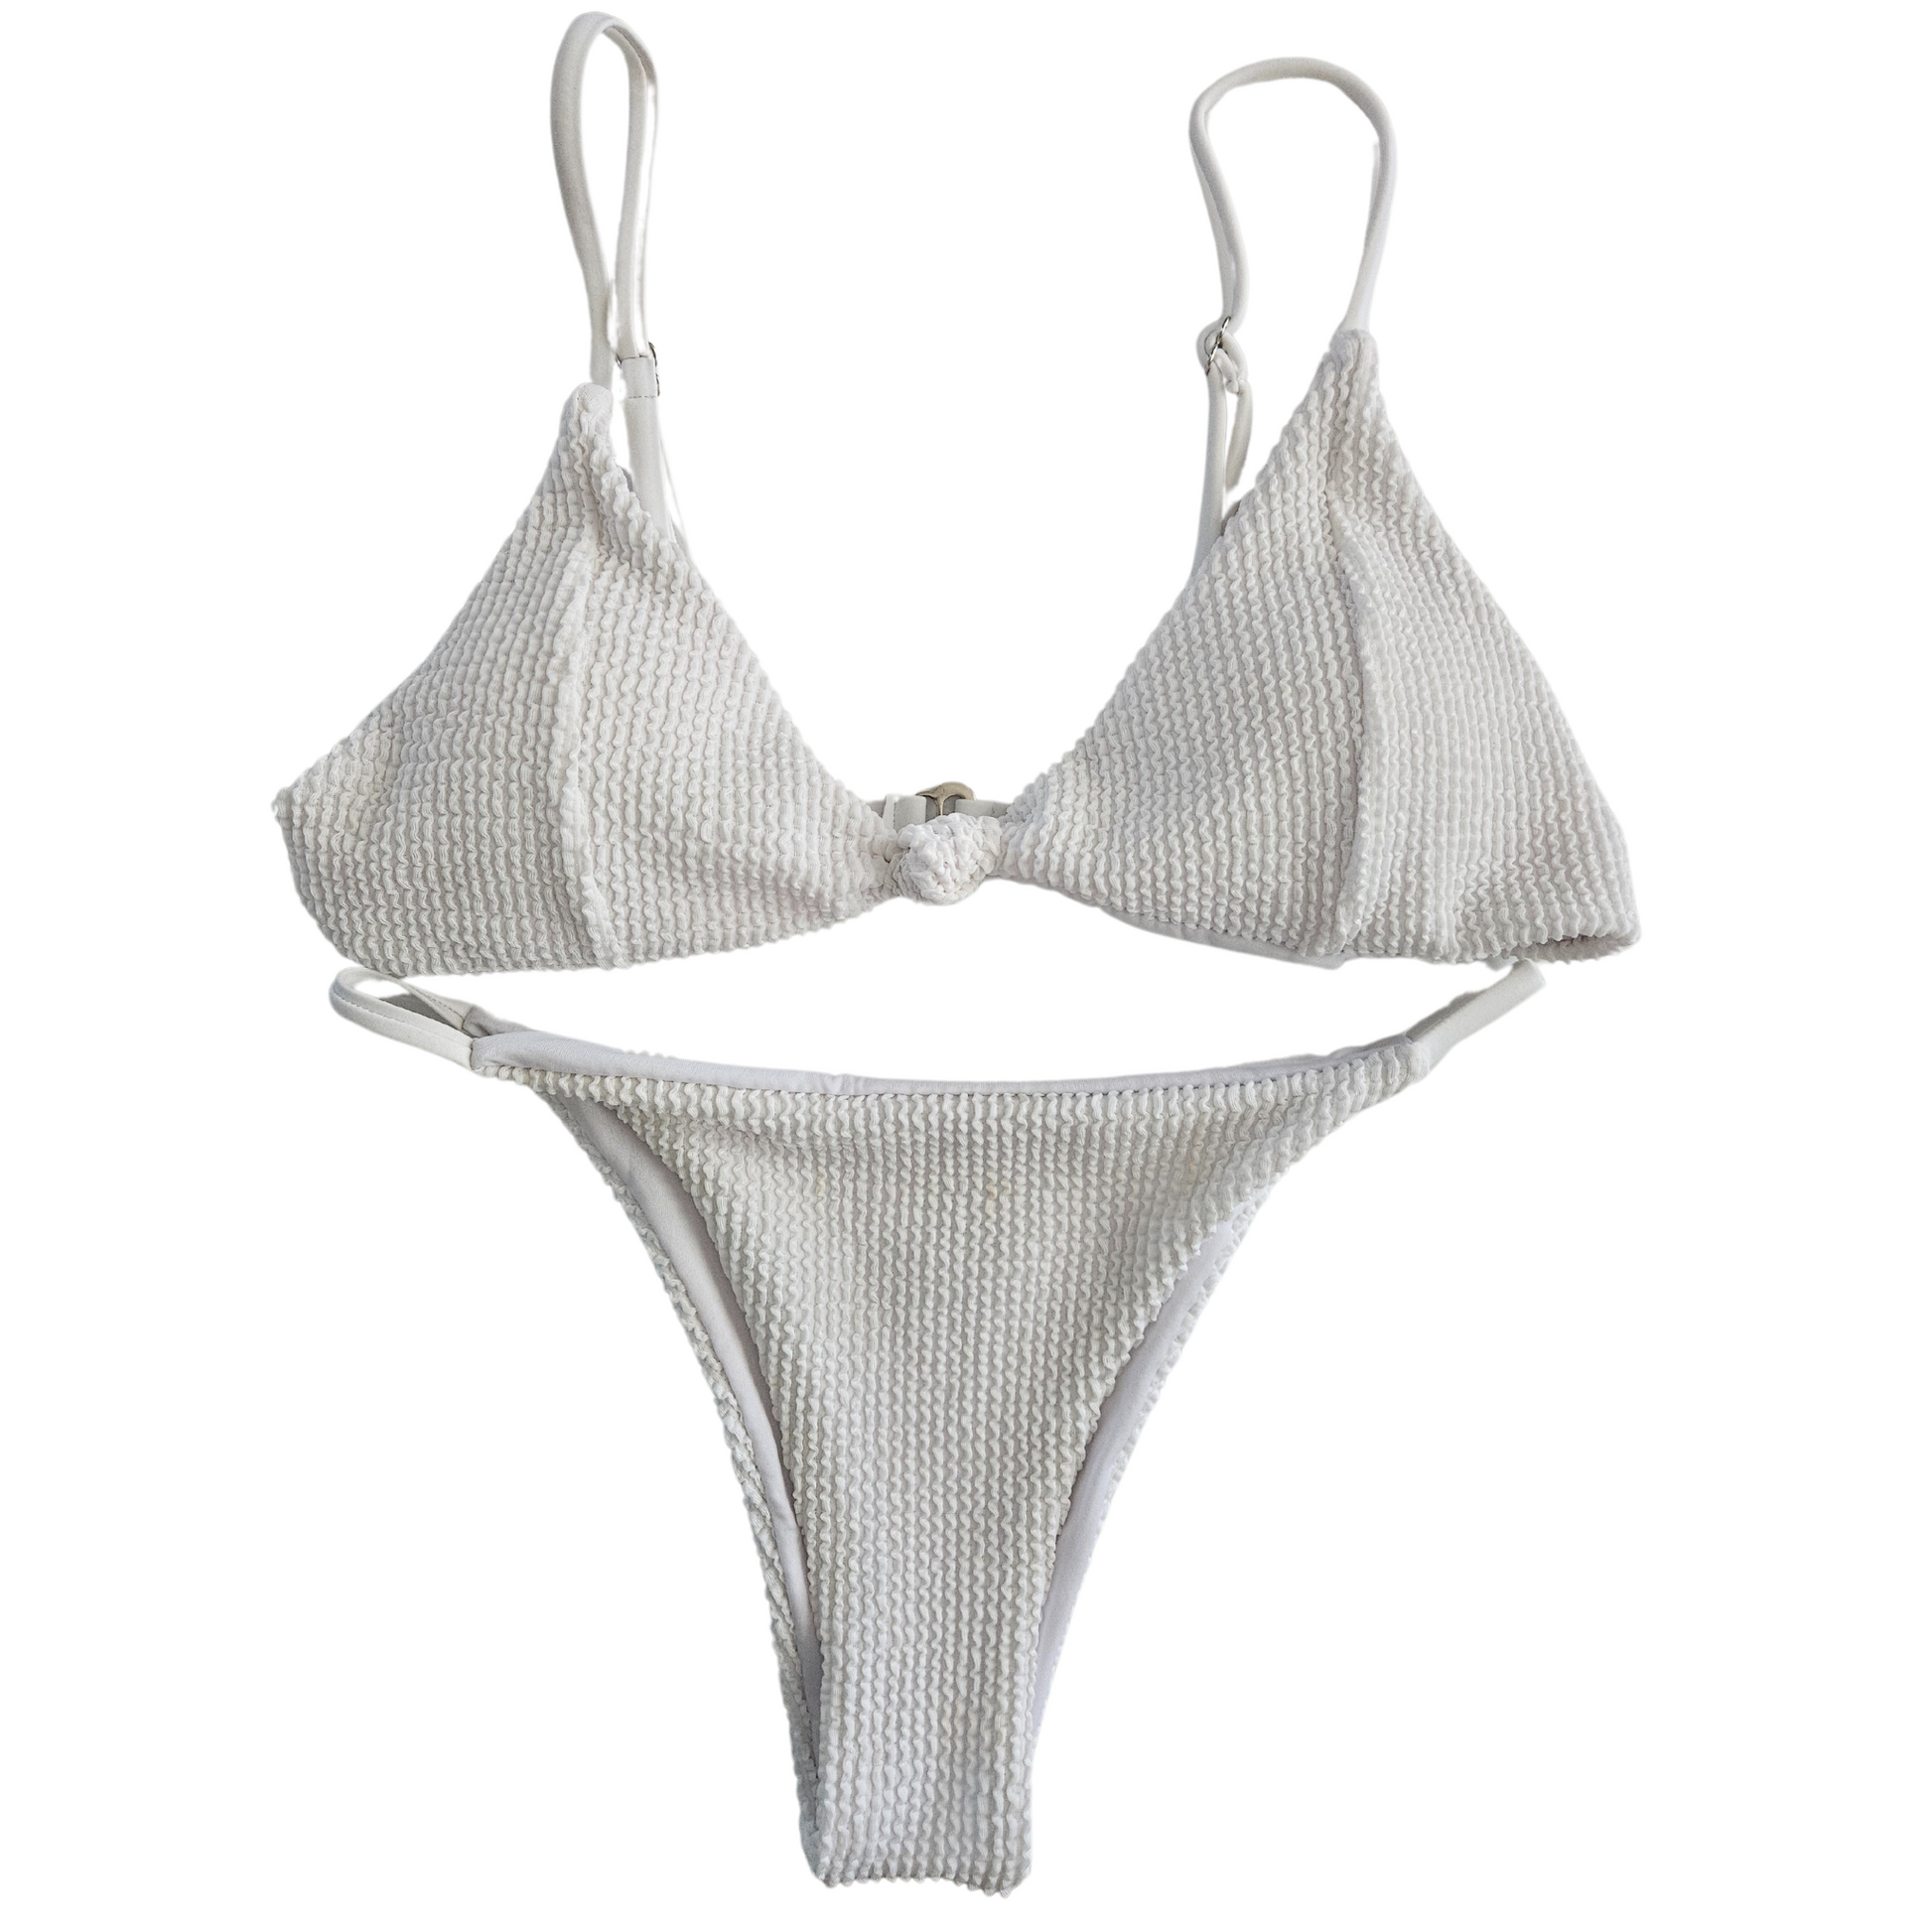 White Textured Two-Piece Bikini by RitaRosa